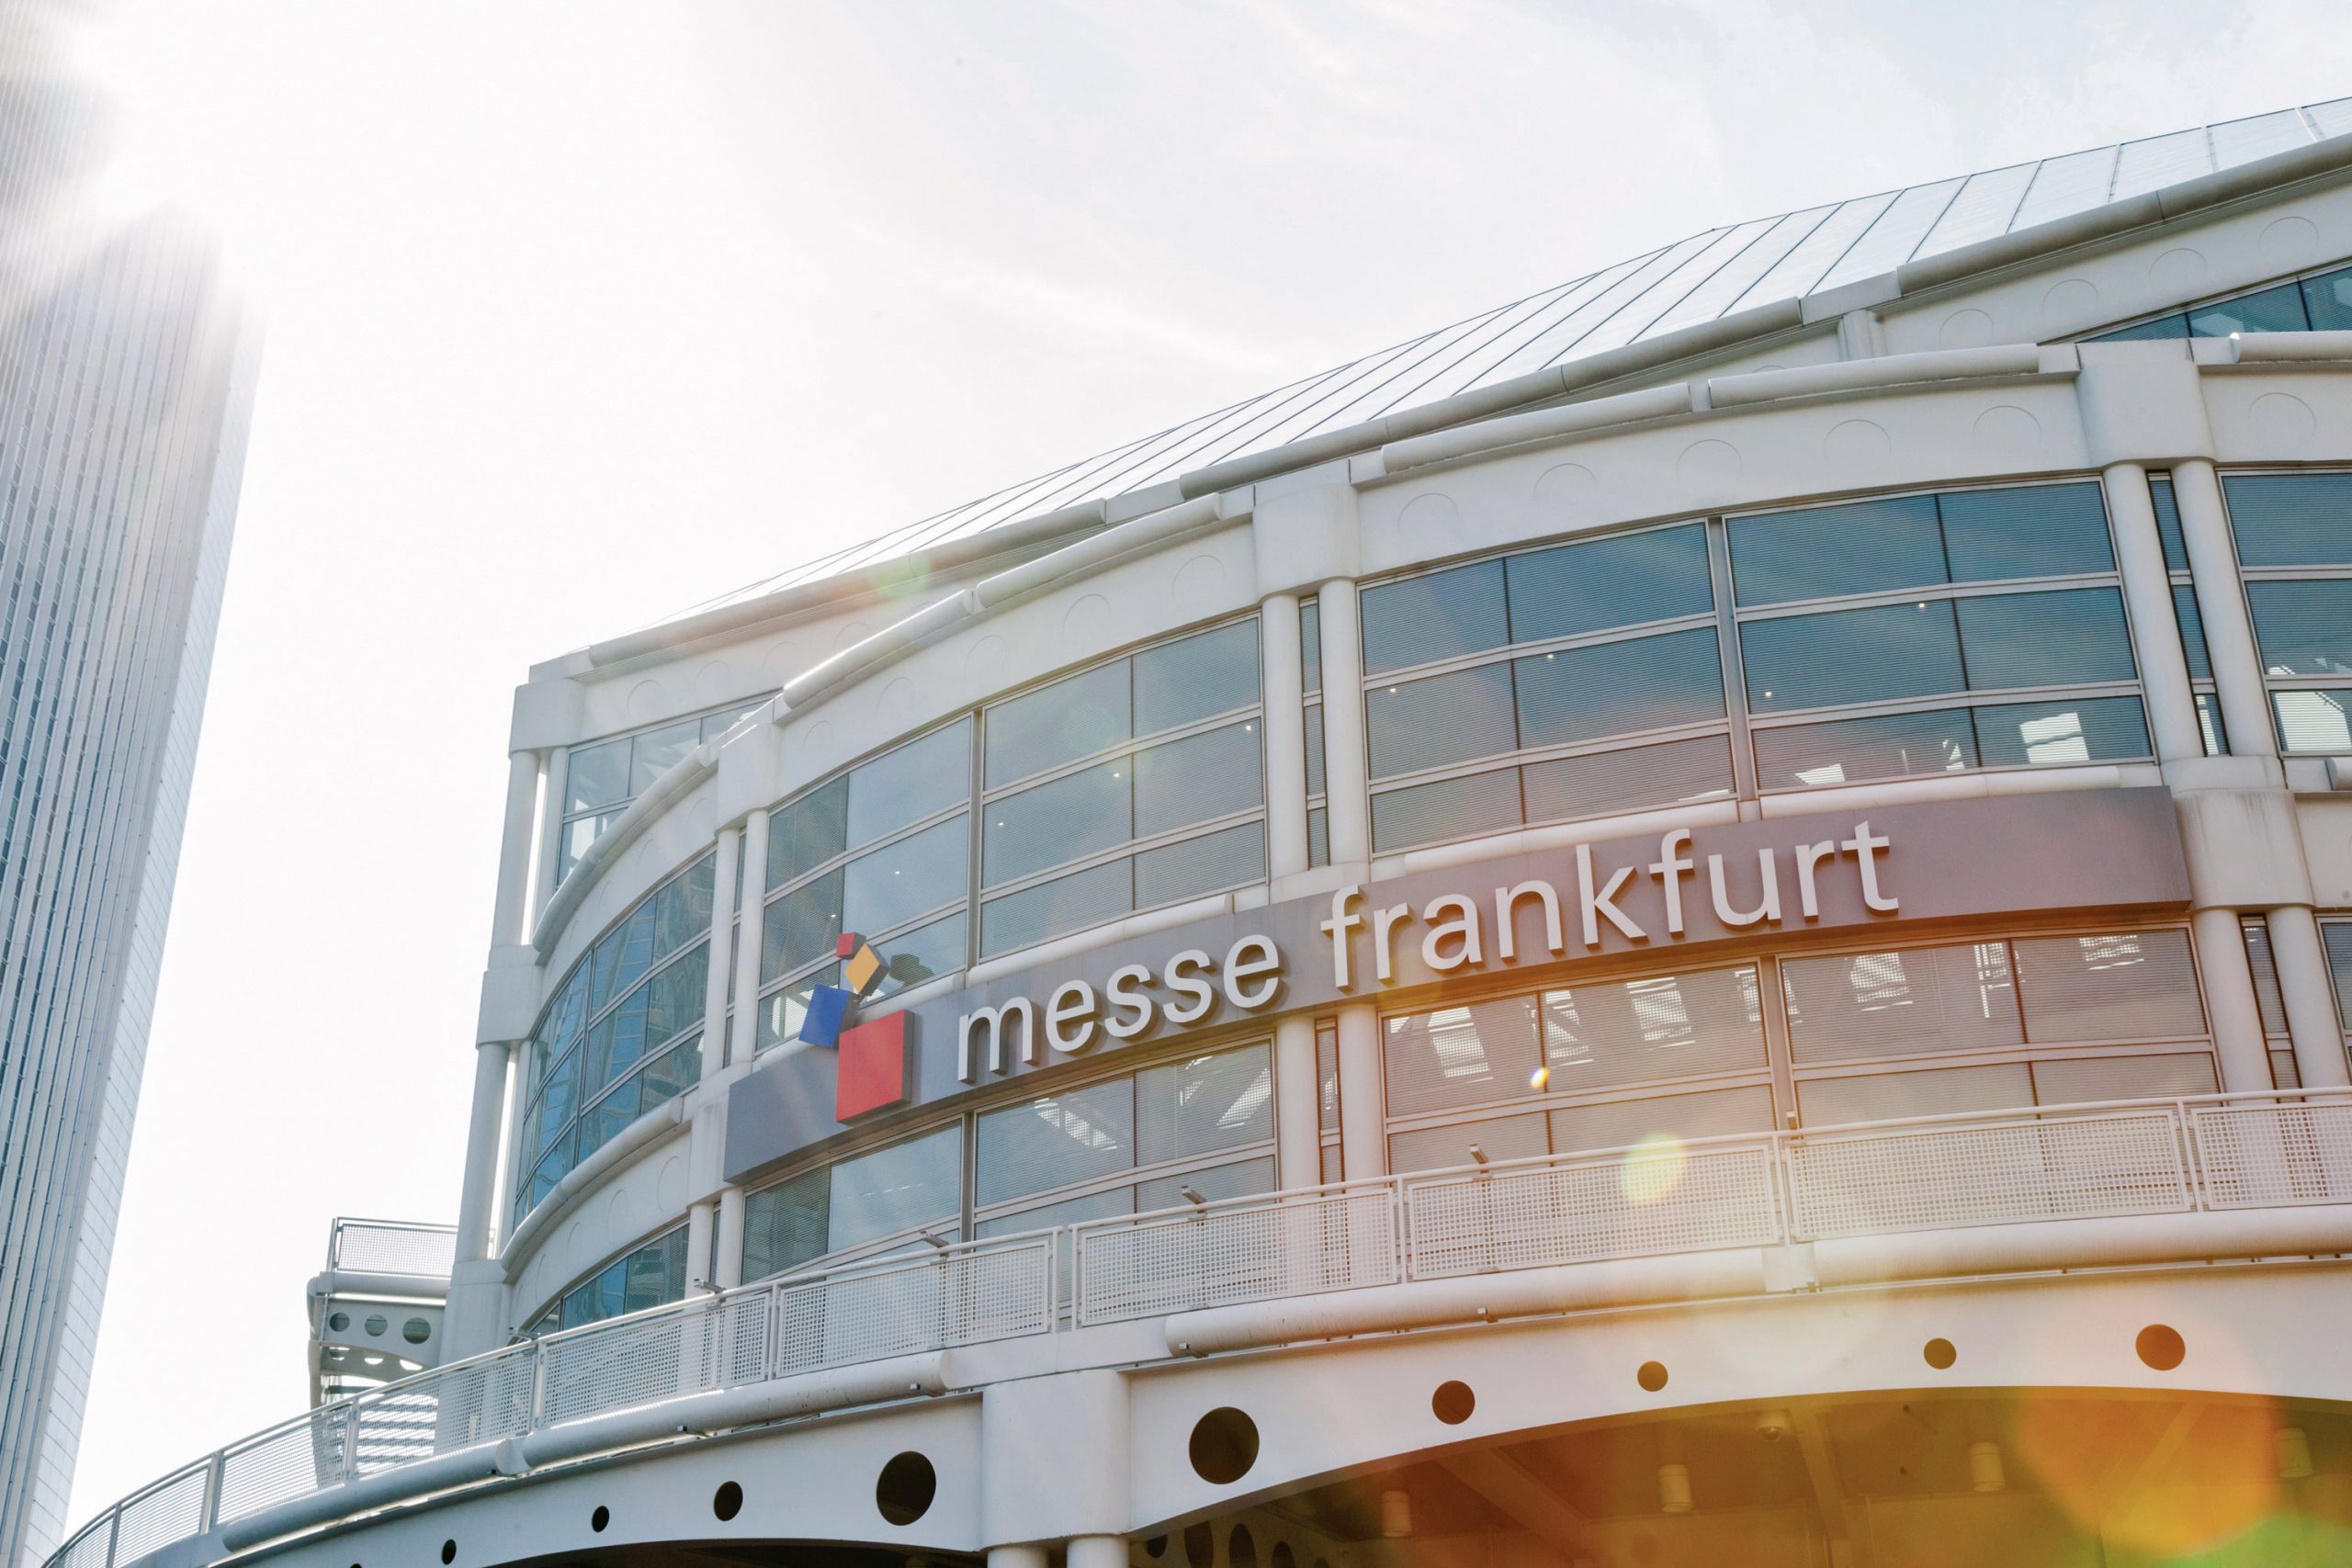 Heimtextil auf Mai verschoben – Messe Frankfurt plant Frühjahr 2021 neu – keine Messen bis einschließlich März